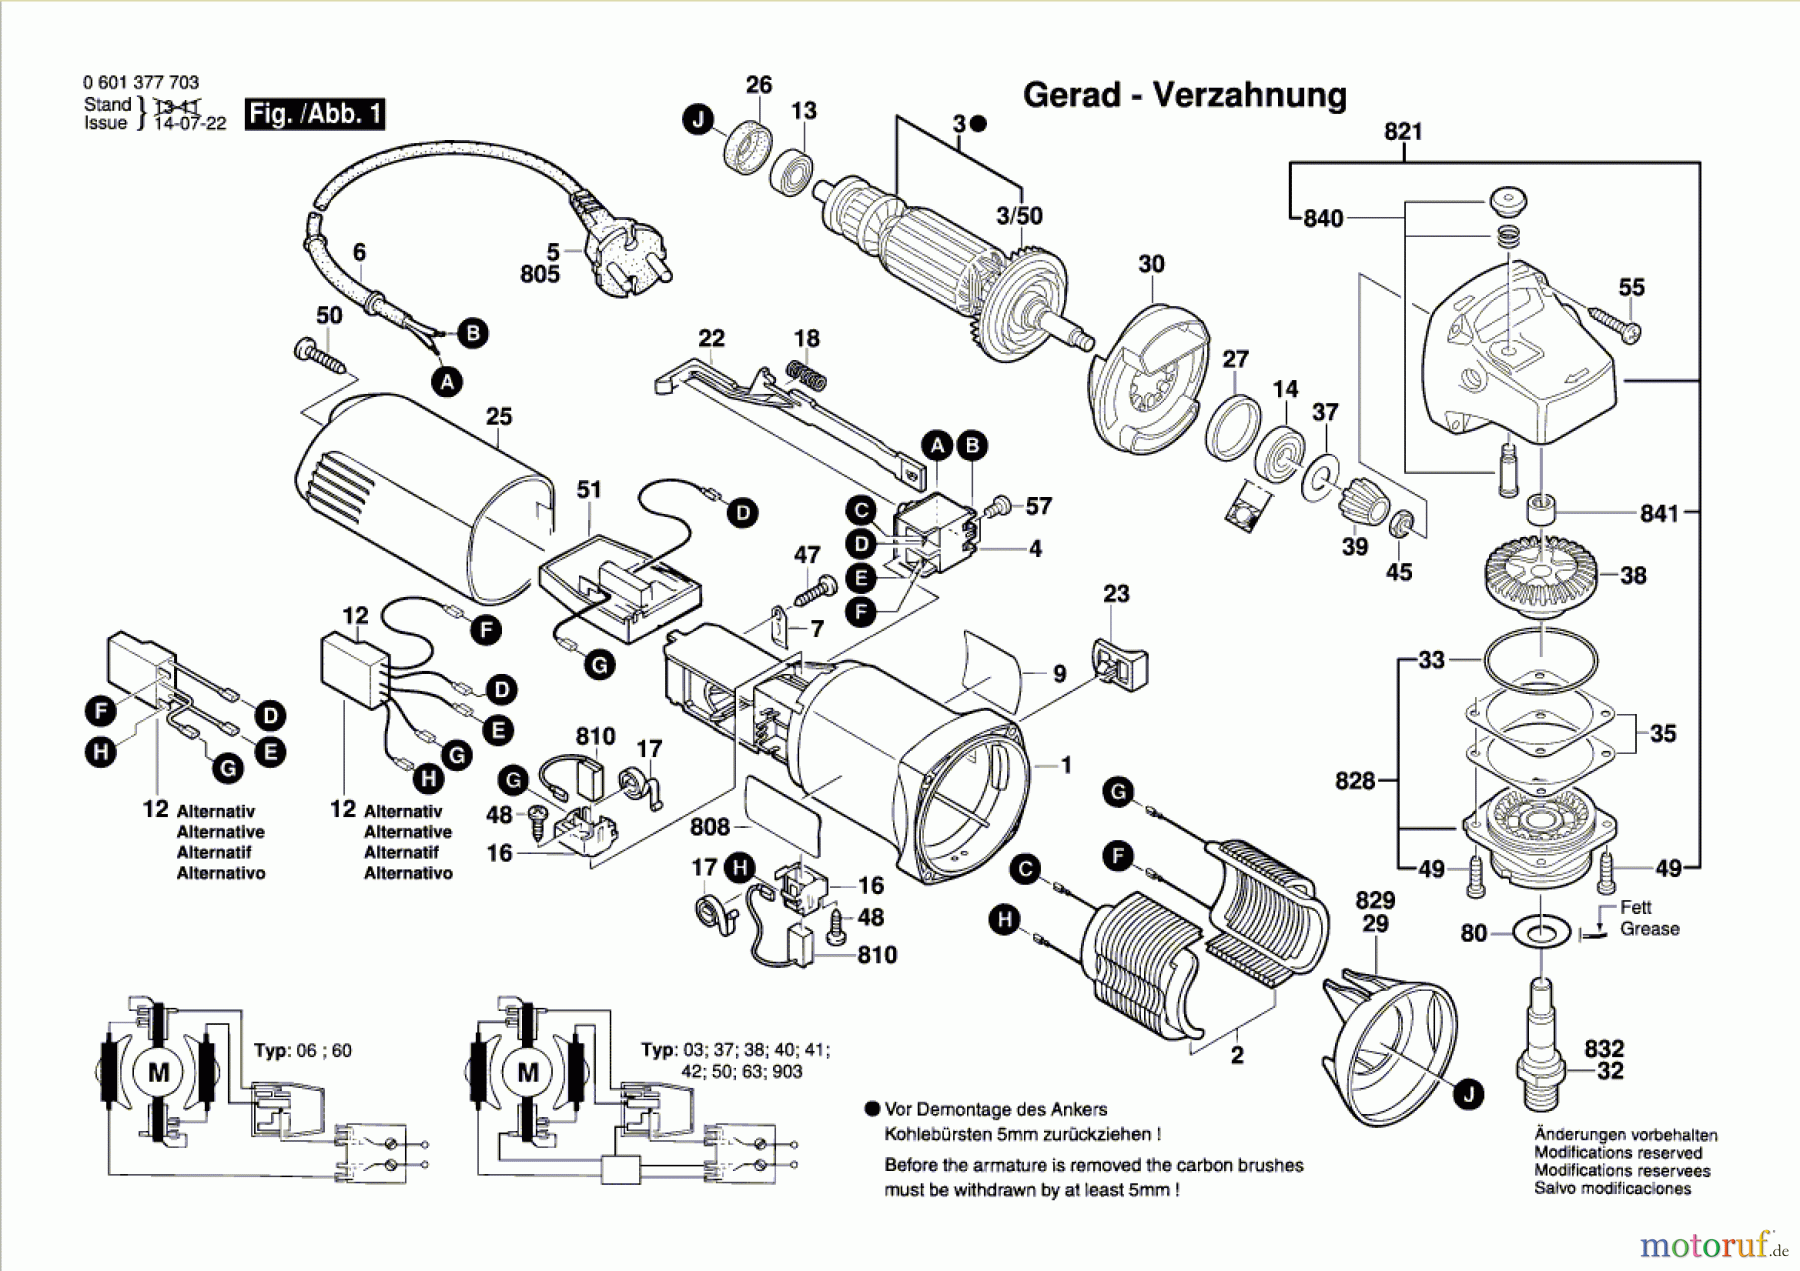  Bosch Werkzeug Winkelschleifer GWS 850 C Seite 1